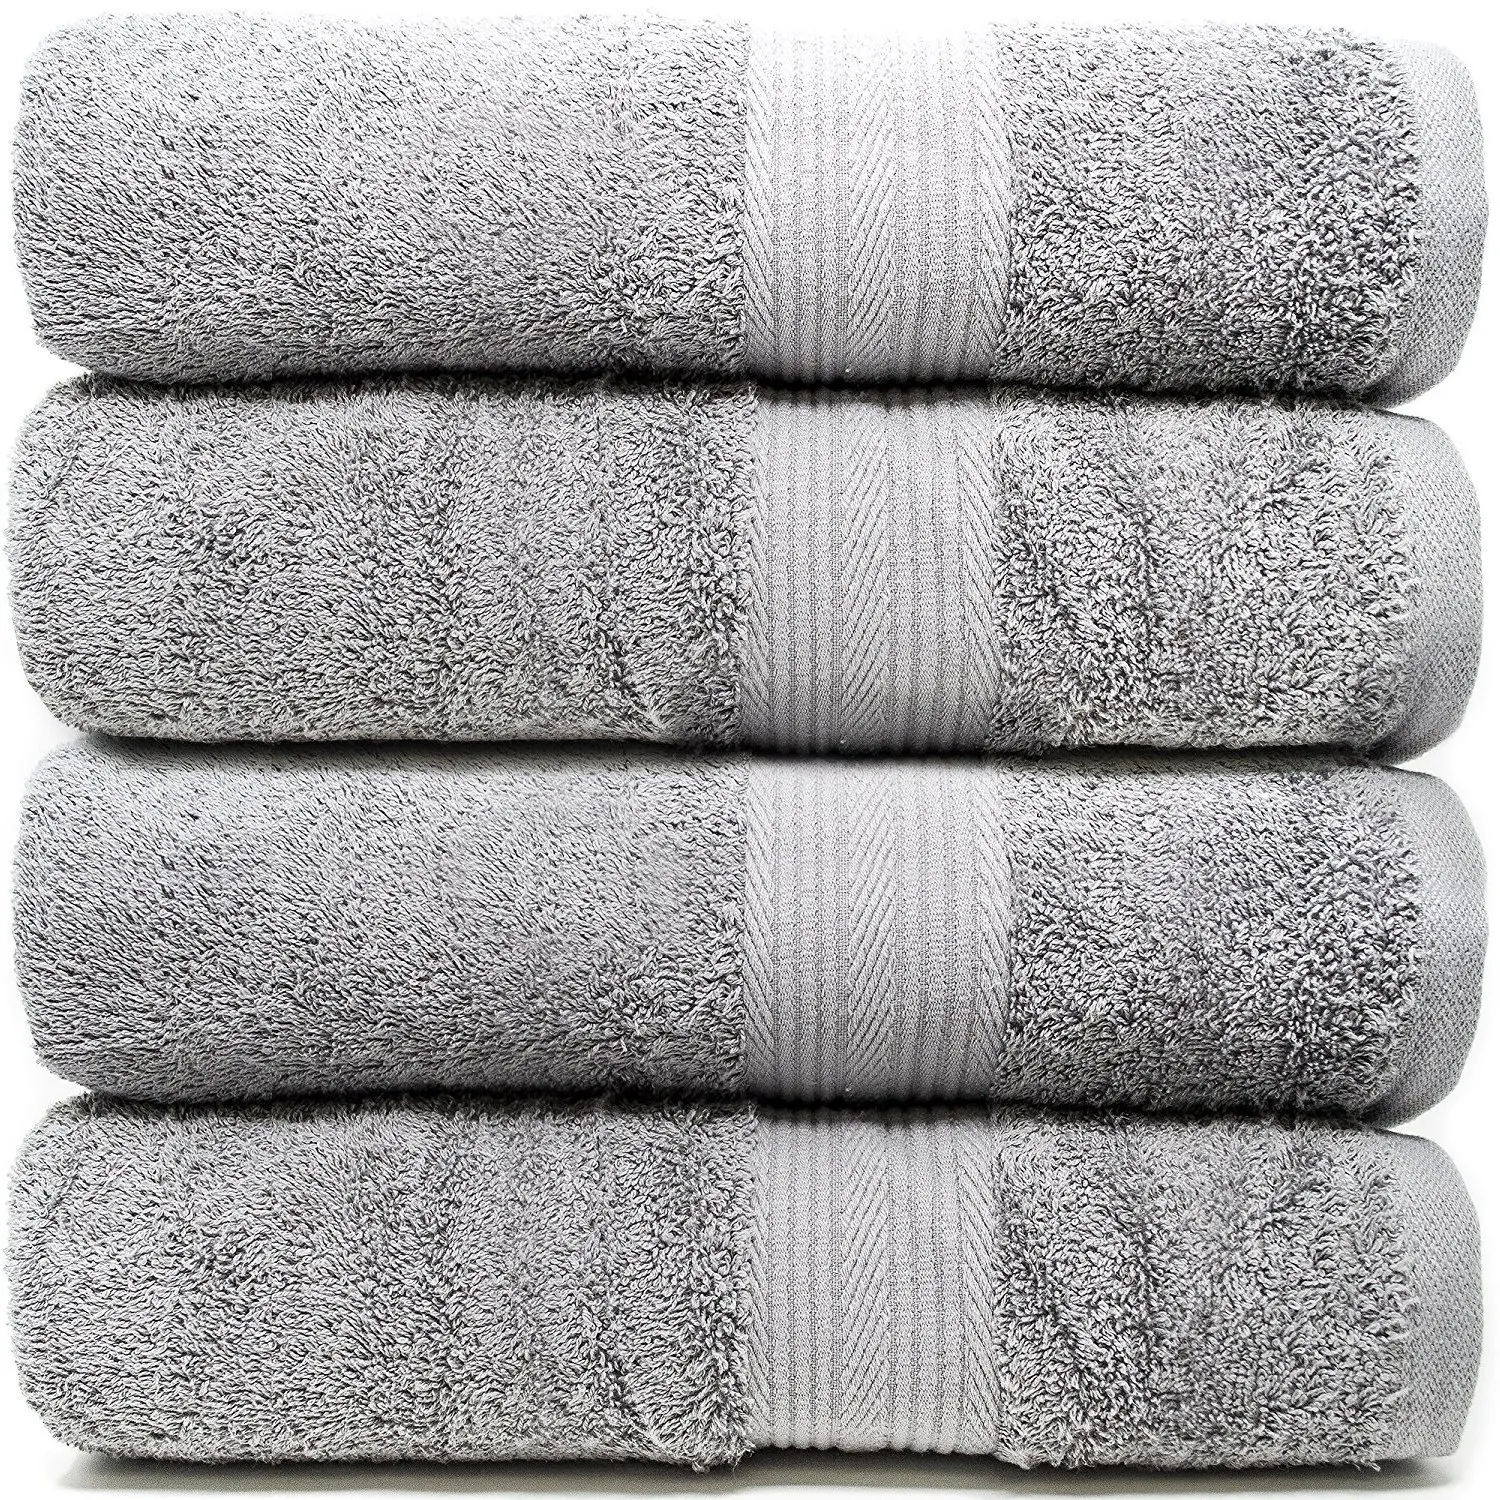 Черно белые полотенца. Стопка махровых полотенец. Полотенце (серый). Сложенные полотенца. Полотенце махровое серый.